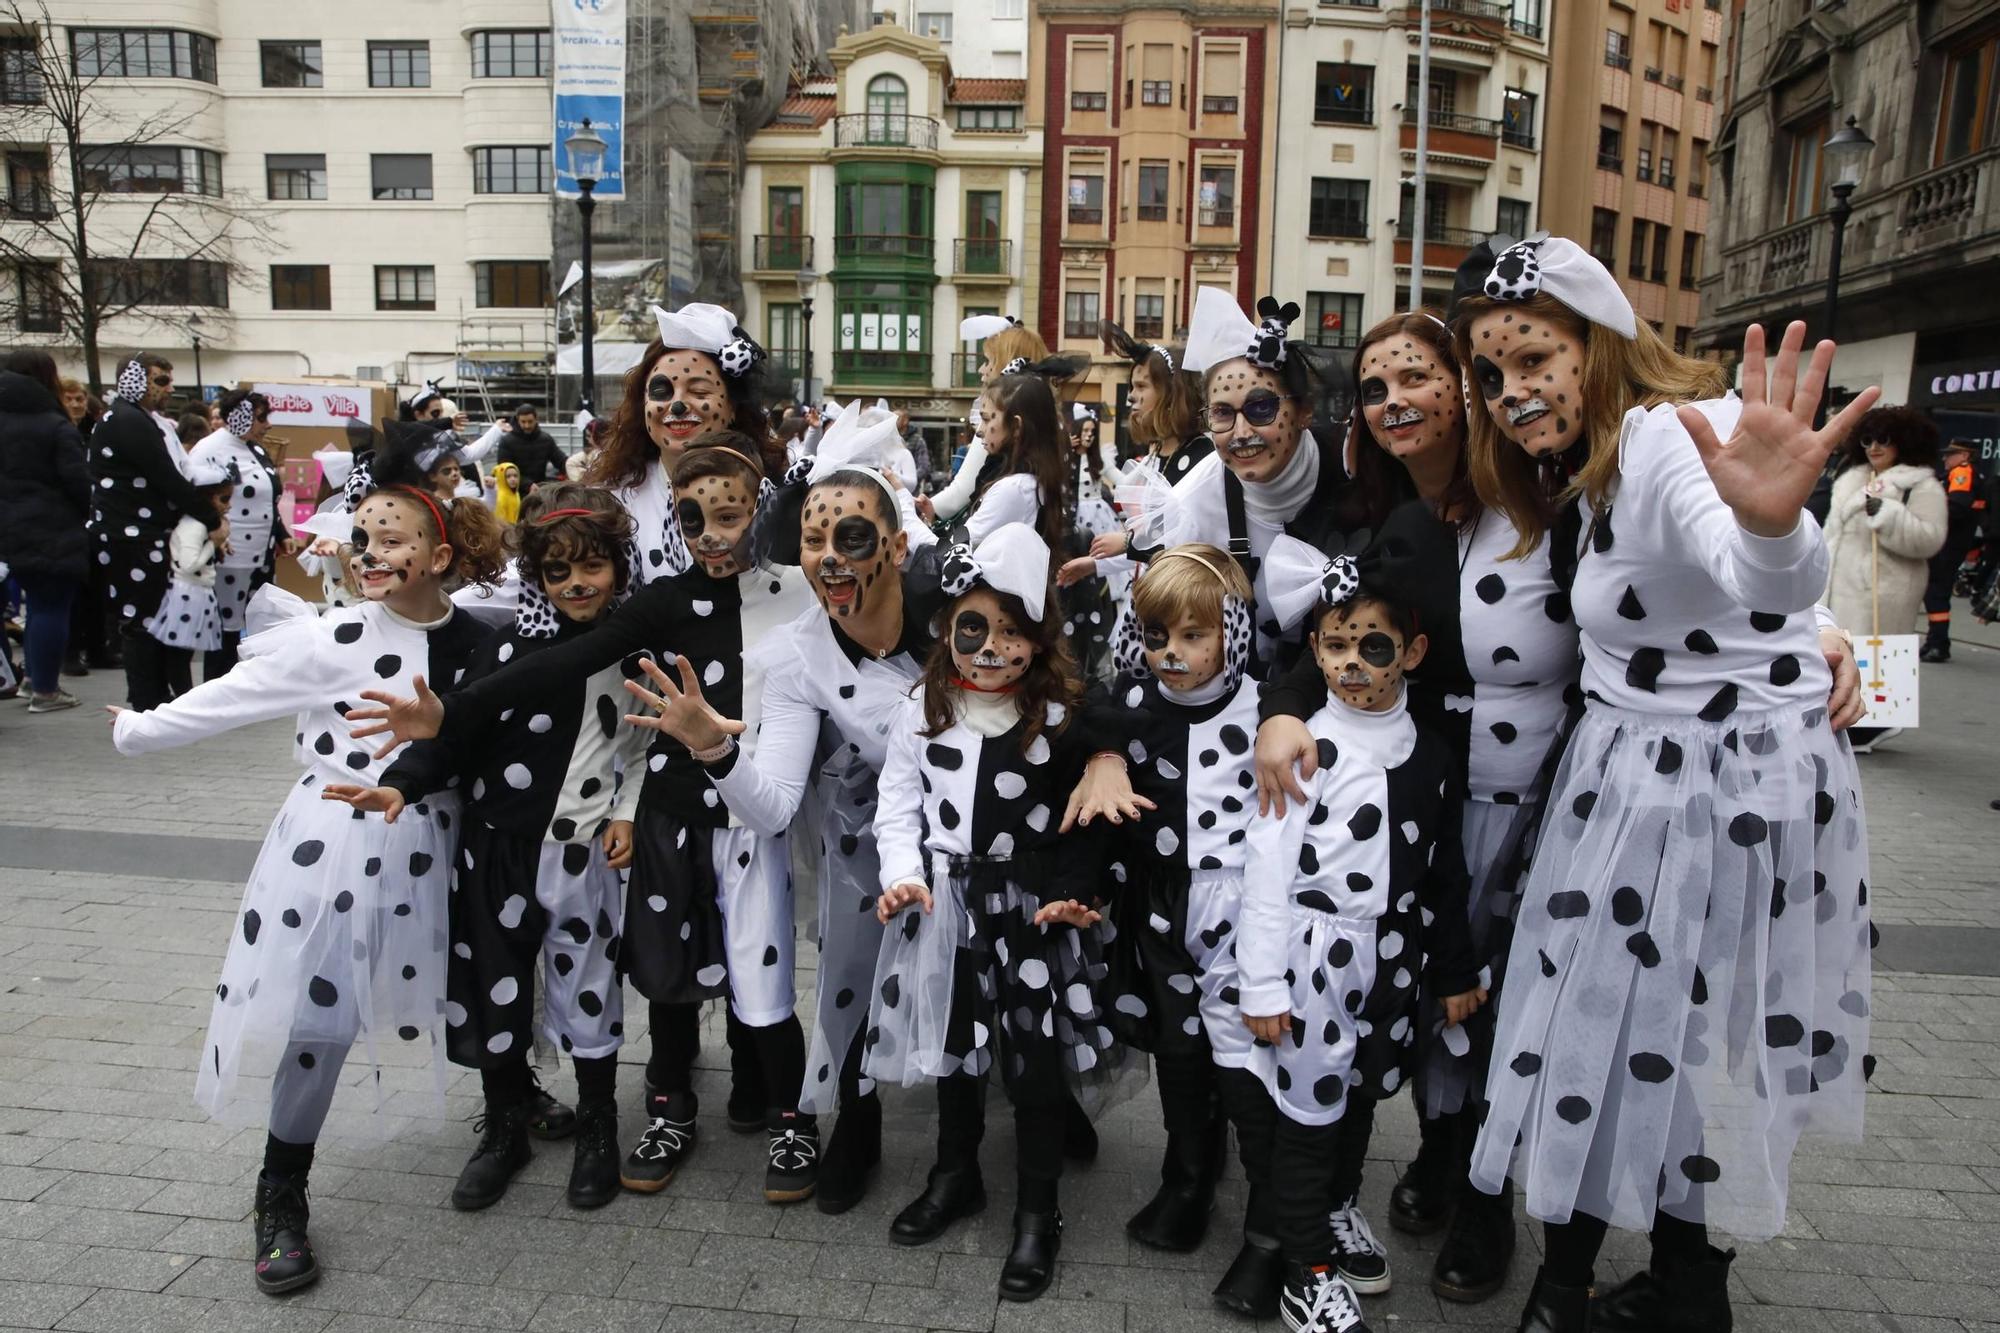 Así han disfrutado pequeños y mayores en el desfile infantil del Antroxu de Gijón (en imágenes)